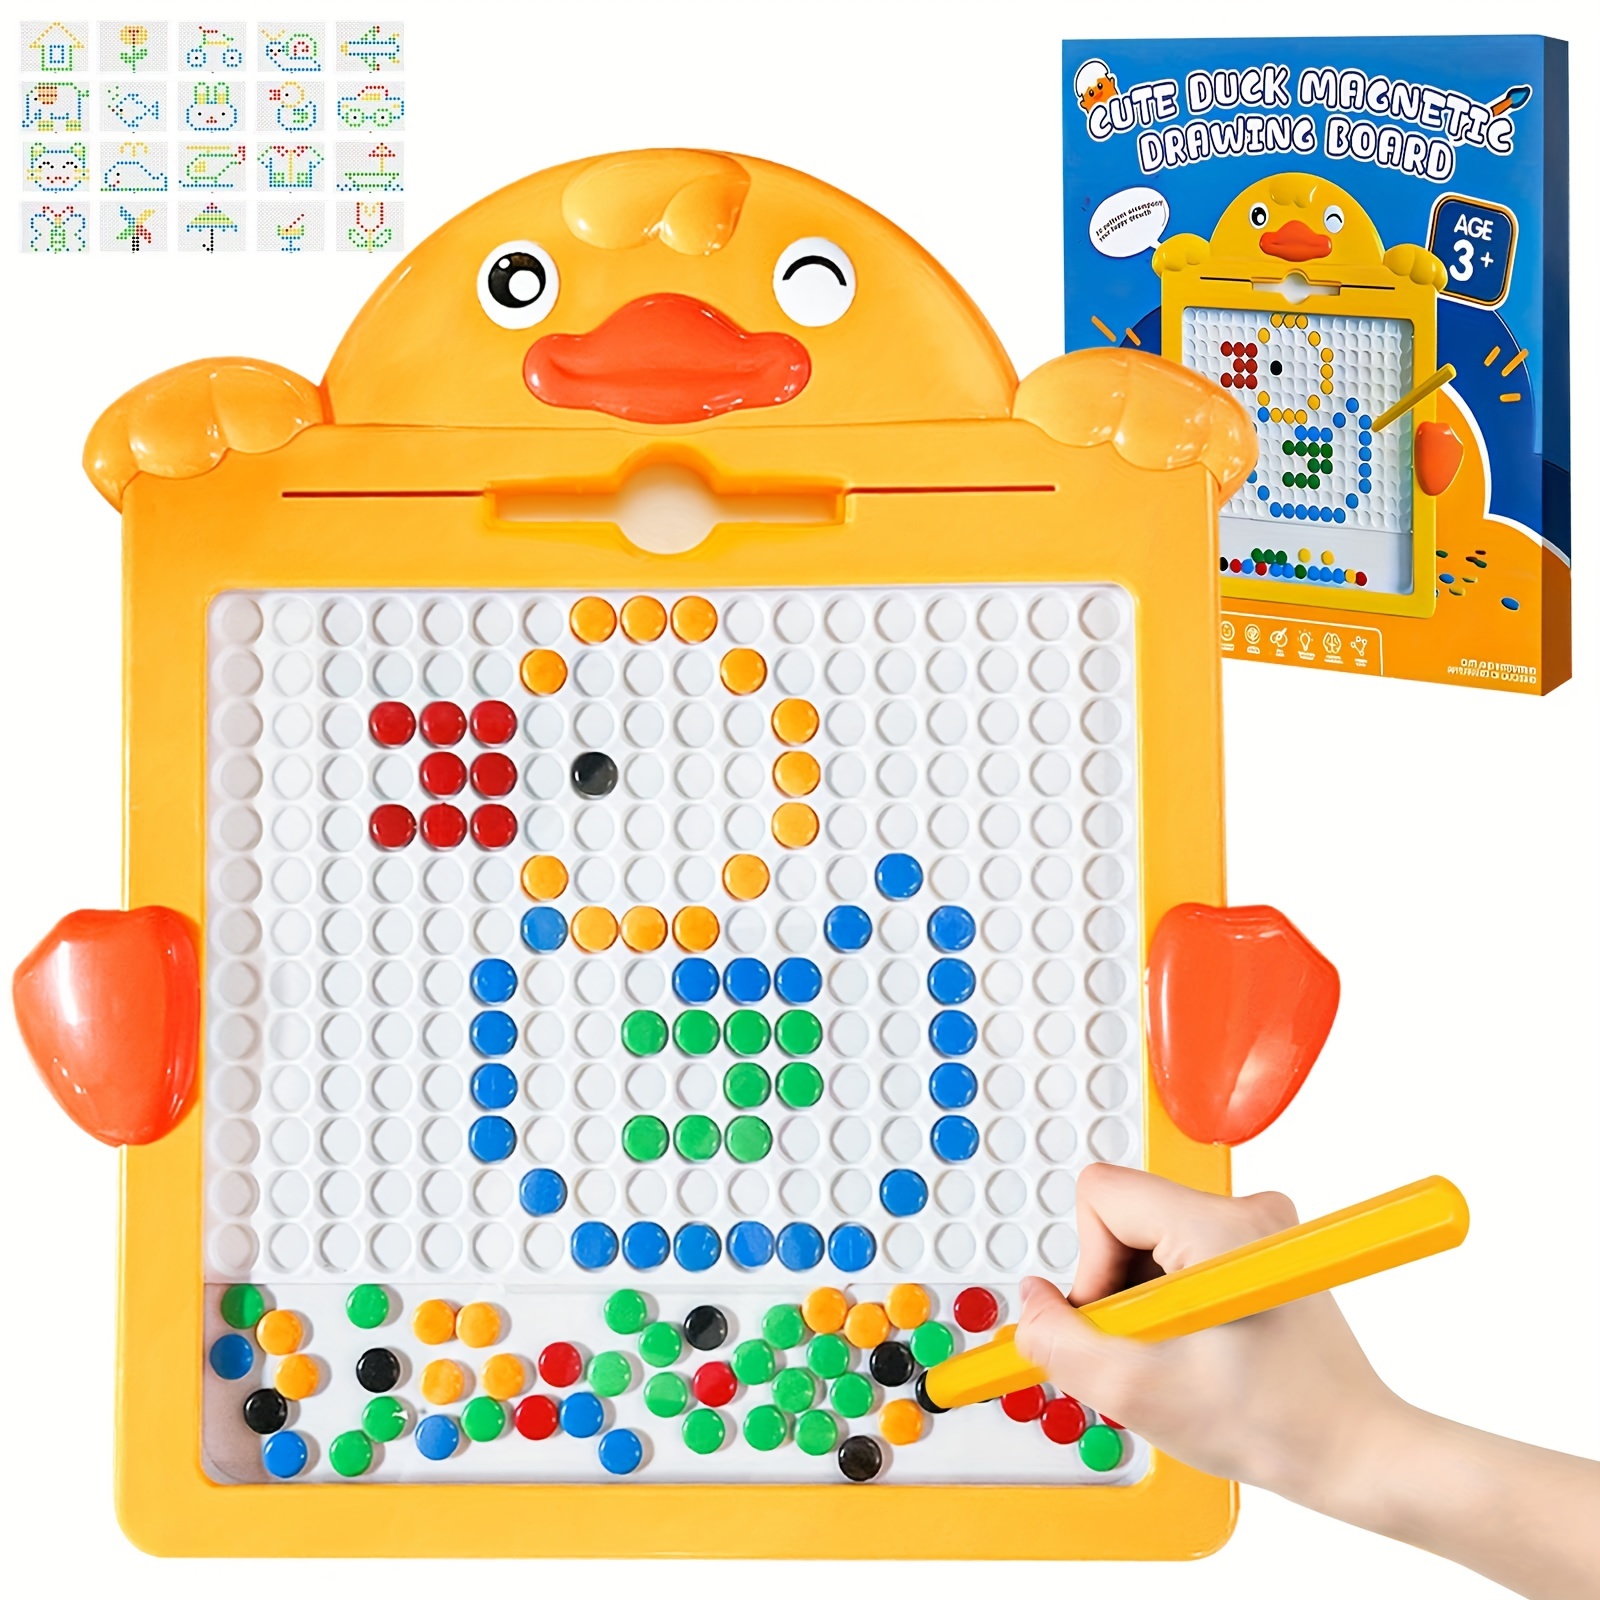 TESNN Juguetes para niñas de 2 a 3 años, juguetes para niñas, tableta de  escritura LCD para niños, tabletas de dibujo borrables para niños de 2 a 4